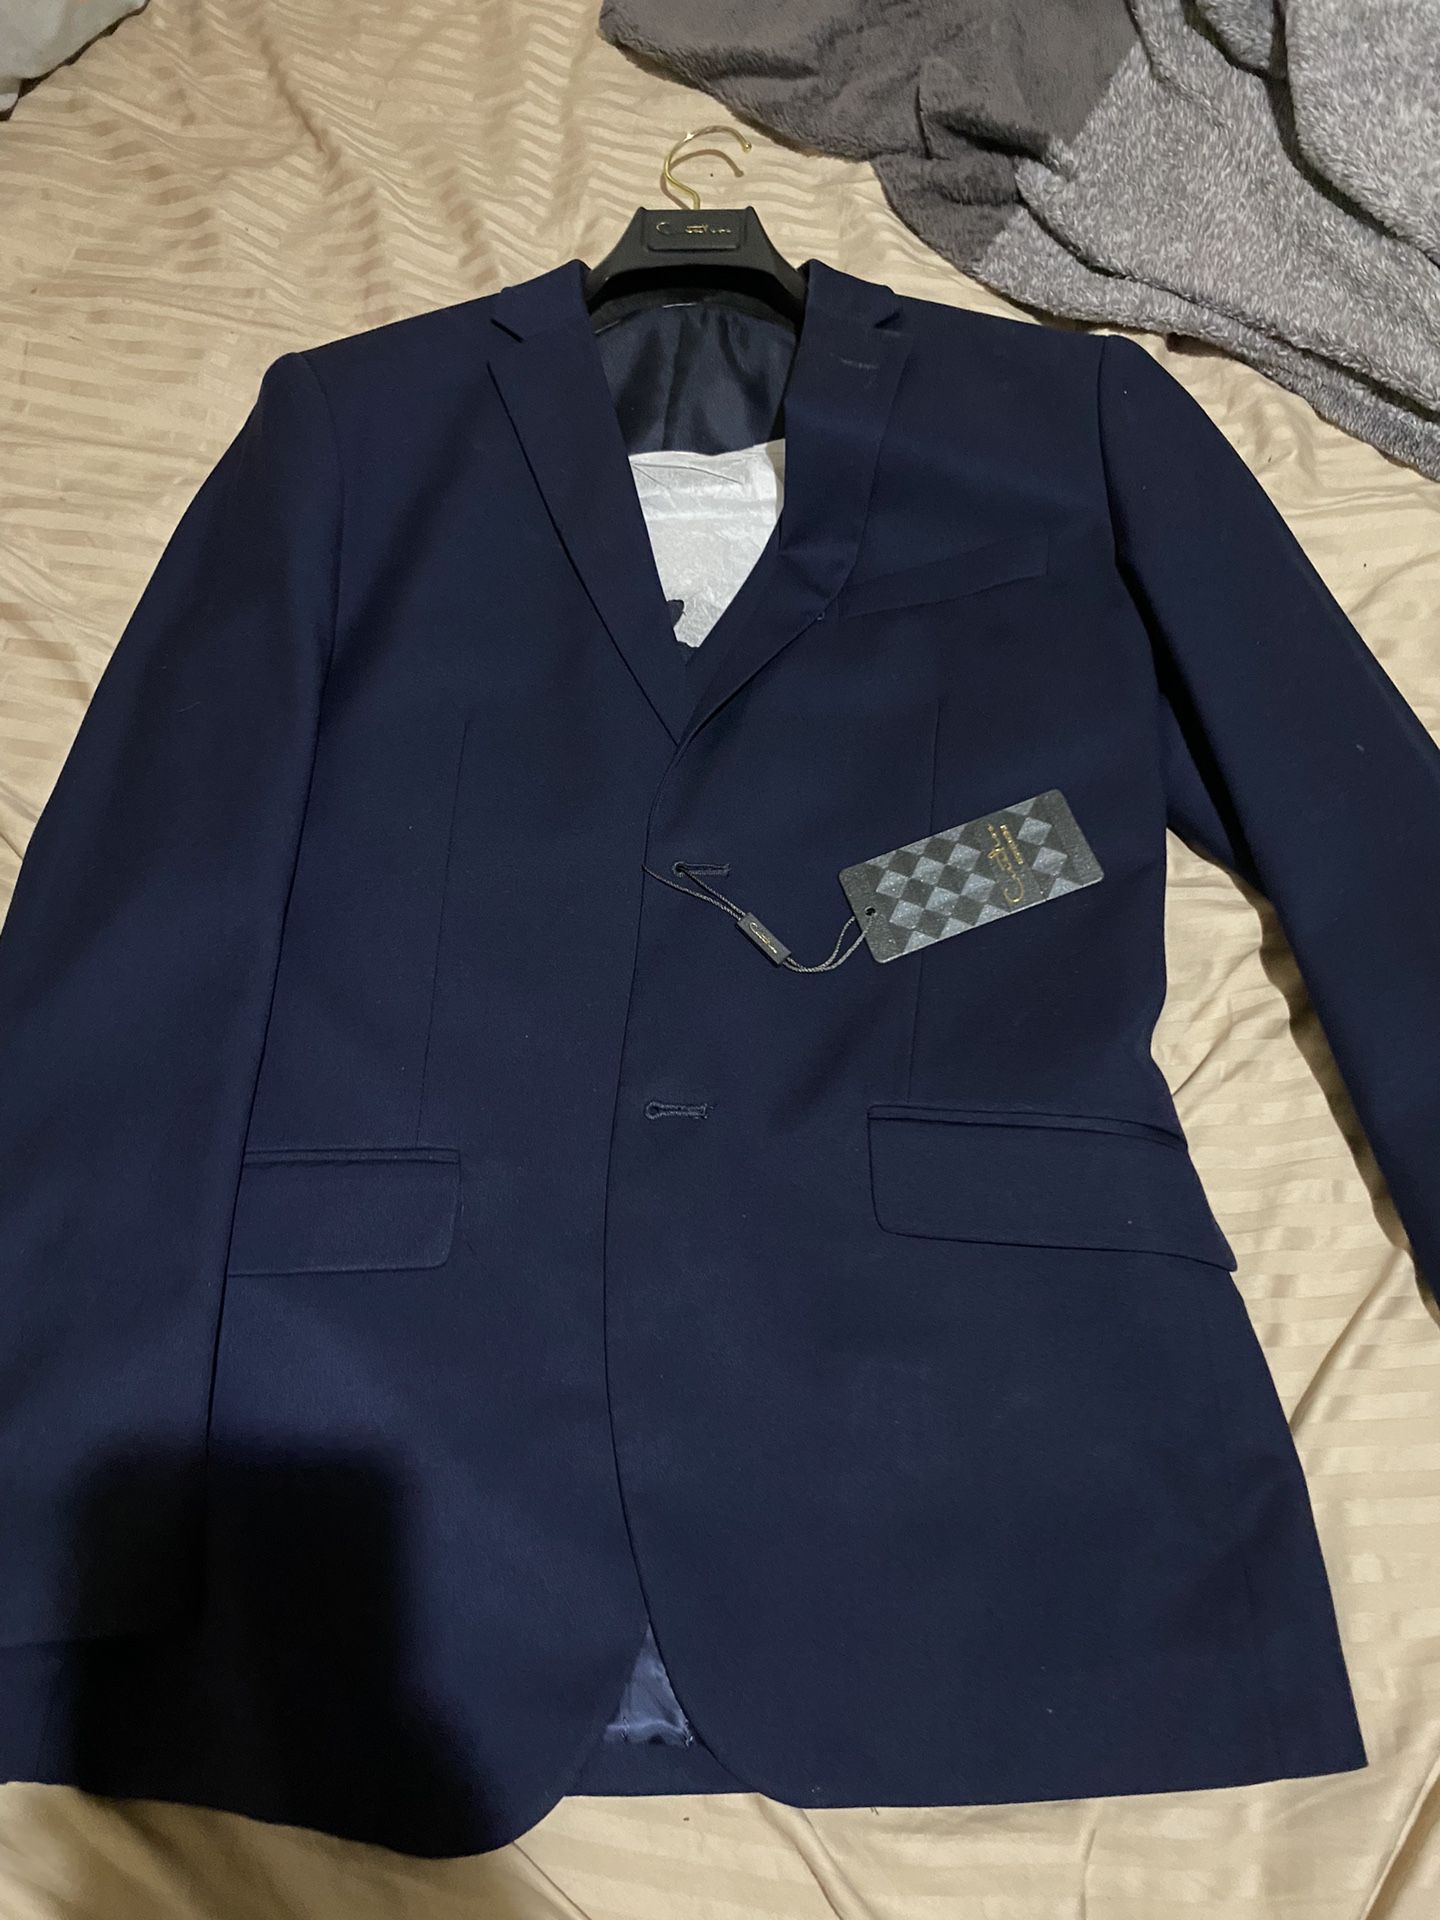 Navy Blue Suit